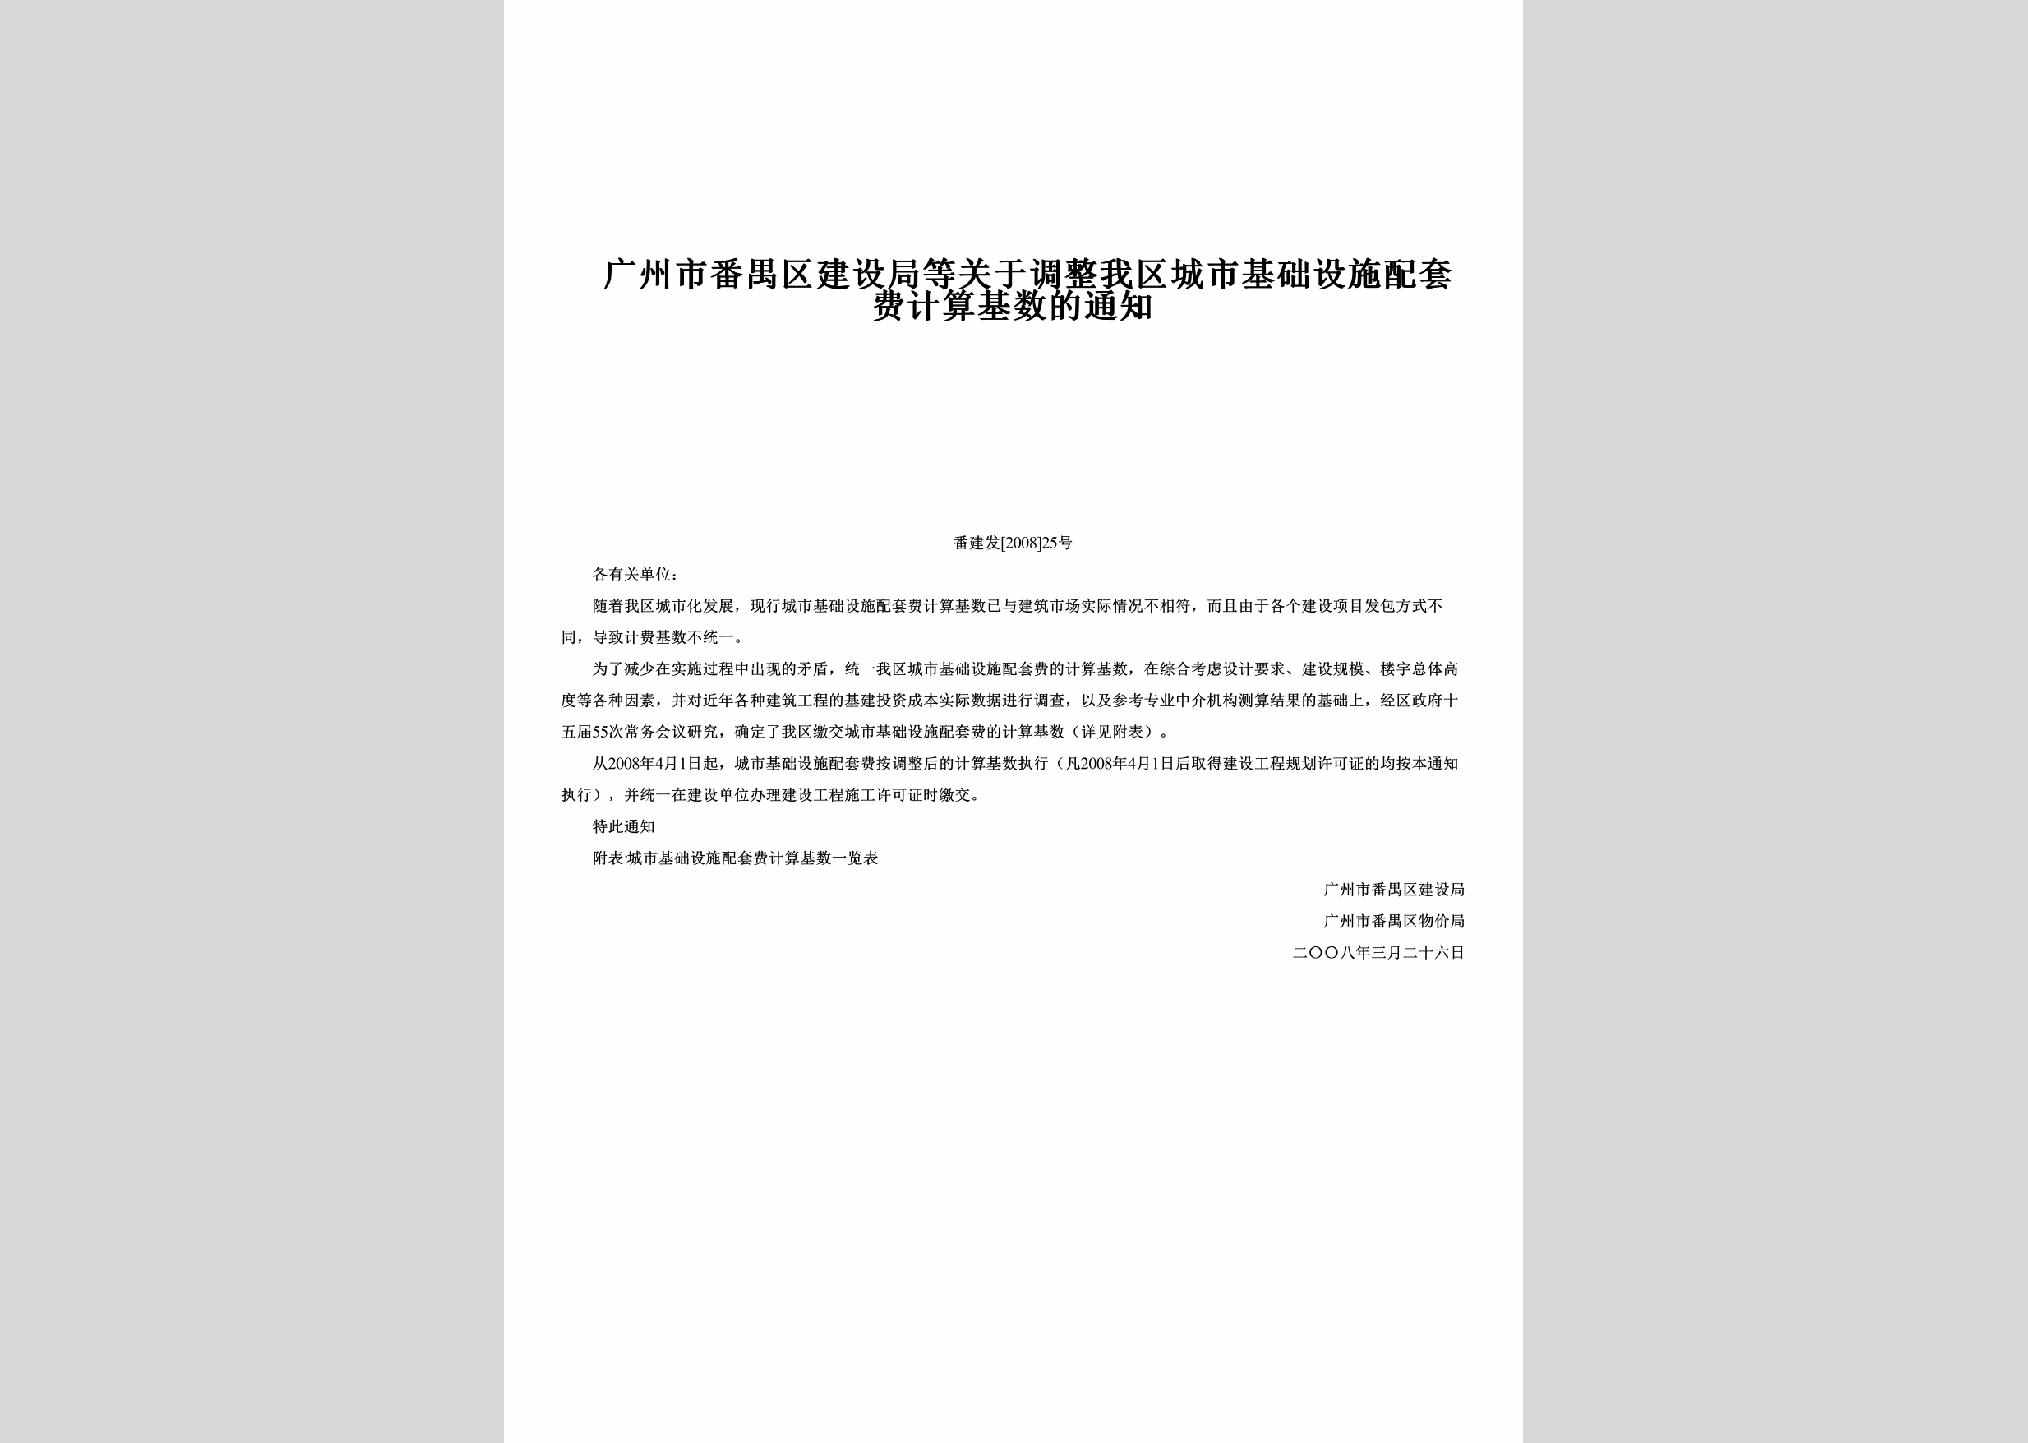 番建发[2008]25号：广州市番禺区建设局等关于调整我区城市基础设施配套费计算基数的通知